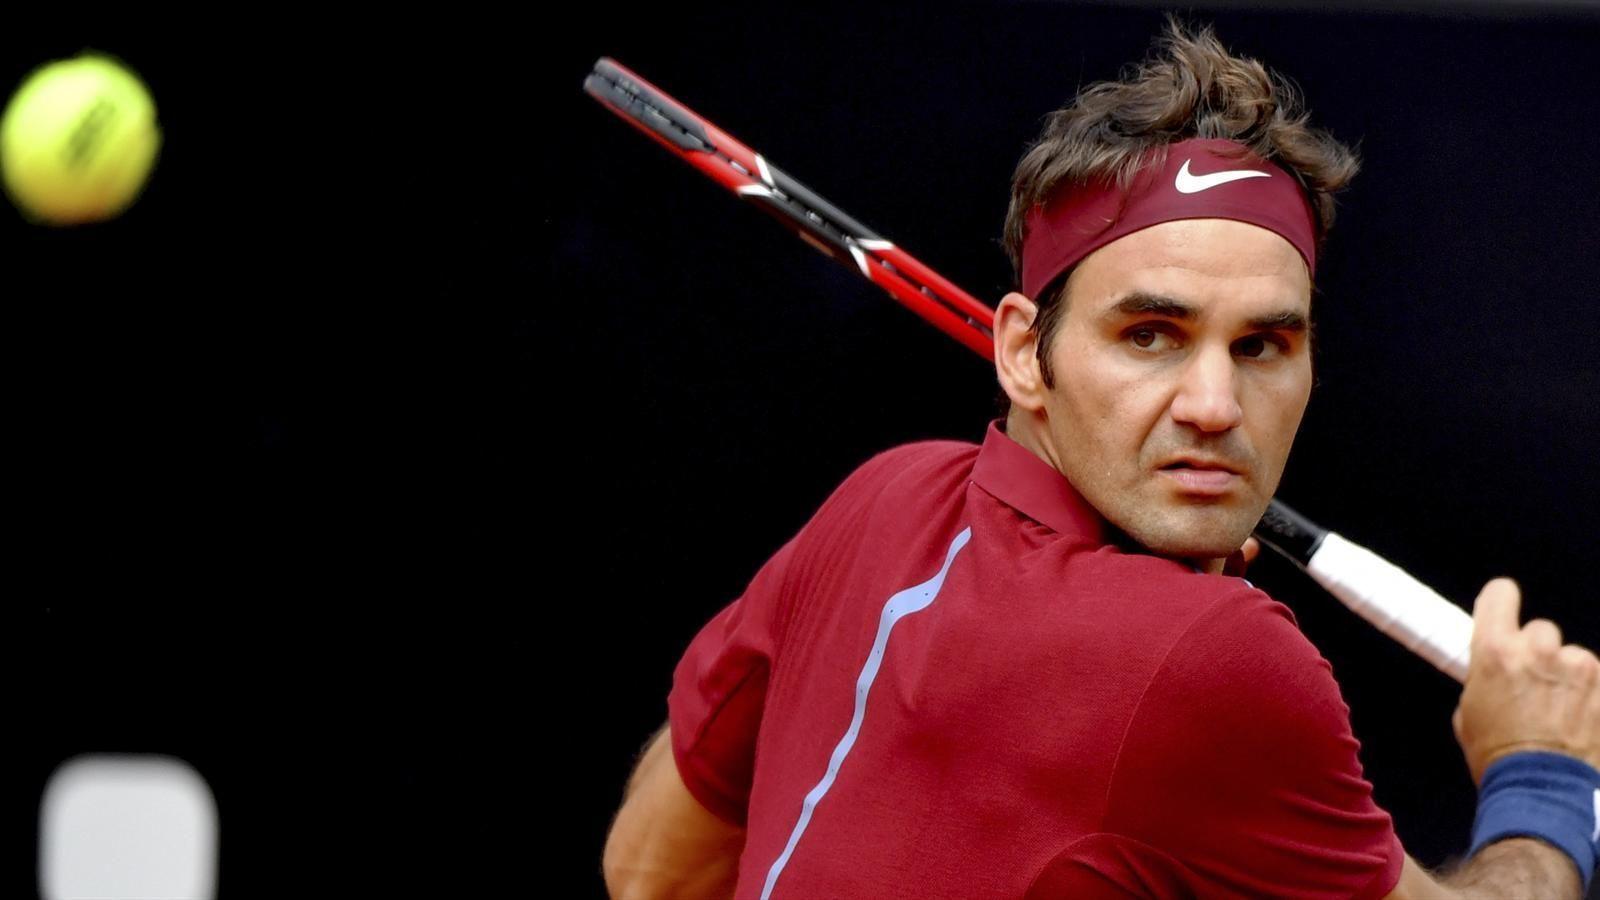 Roger Federer relishing return to grass in Stuttgart, but can he